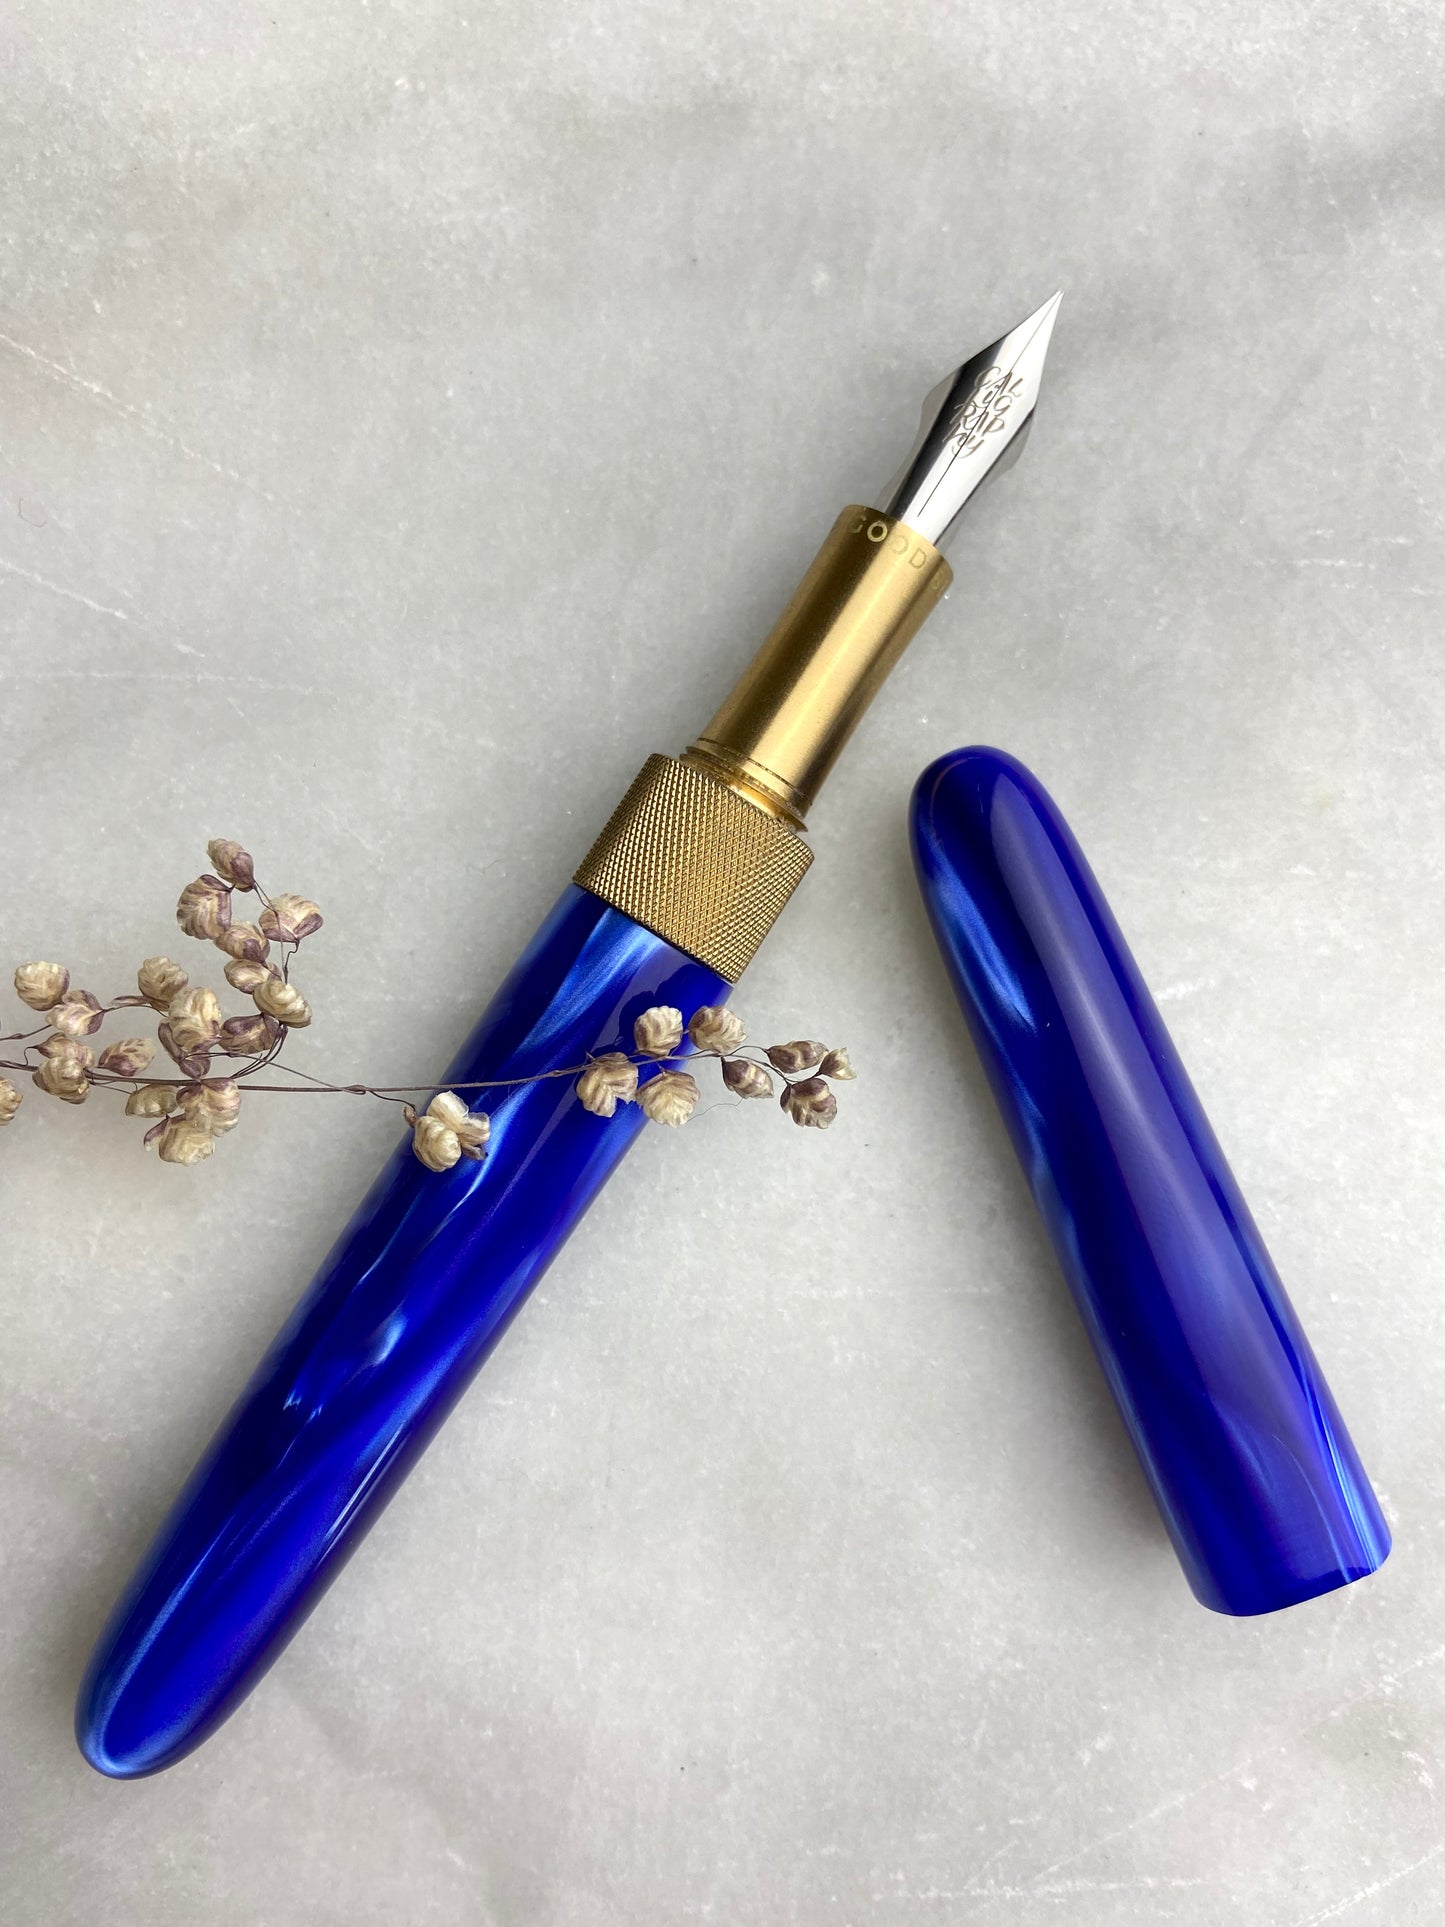 The Good Blue X Den's Pens Collab Edition Fountain Pen